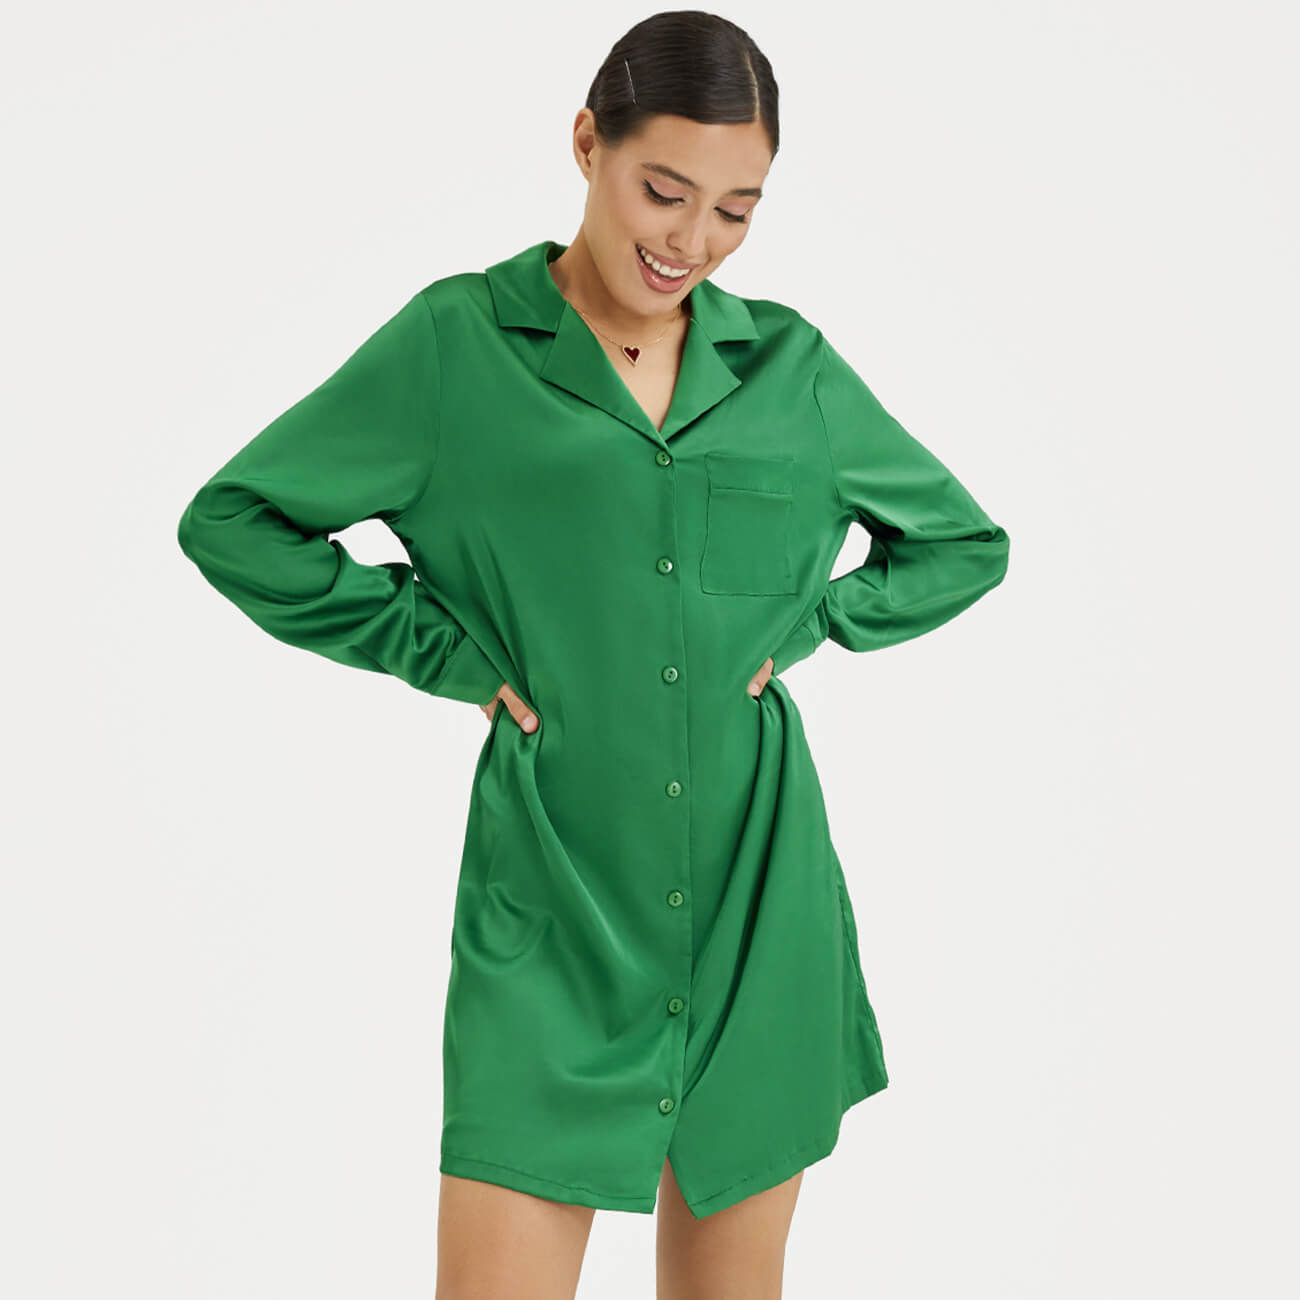 Рубашка женская, р. XL, удлиненная, с длинным рукавом, полиэстер/эластан, зеленая, Madeline рубашка женская р xl с длинным рукавом полиэстер хаки bella